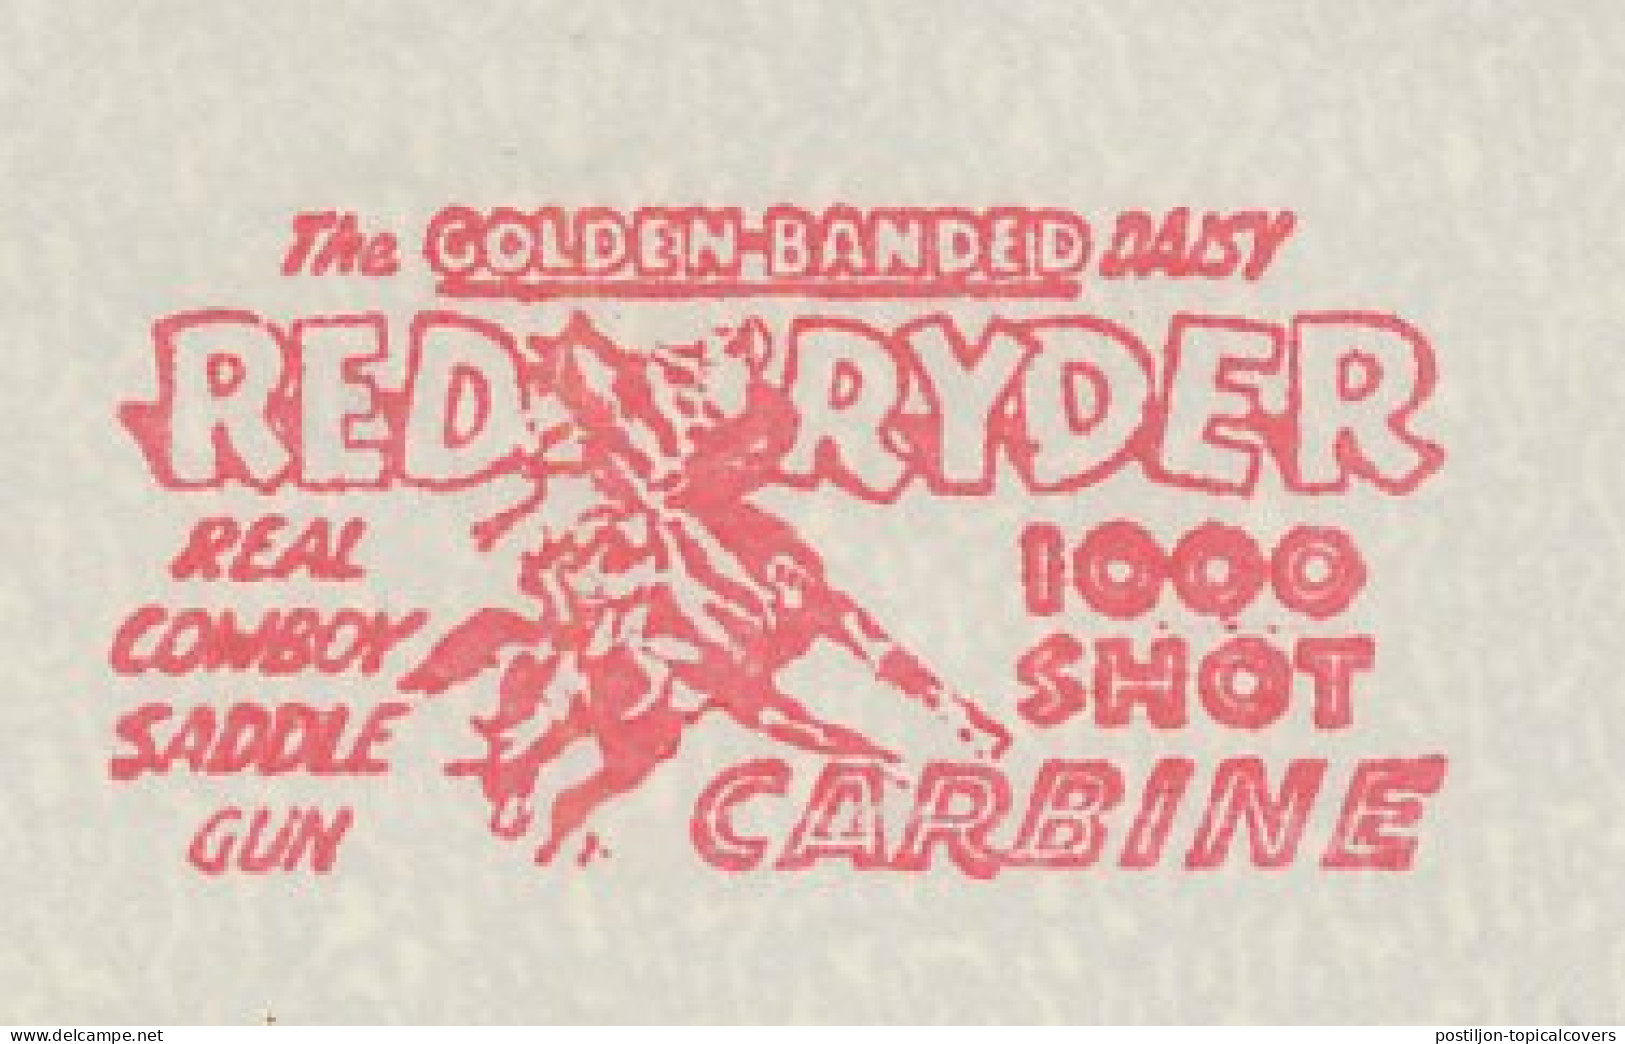 Meter Cut USA 1941 Red Ryder - 1000 Shot Carabine - Cowboy Saddle Gun - Horse - Militaria